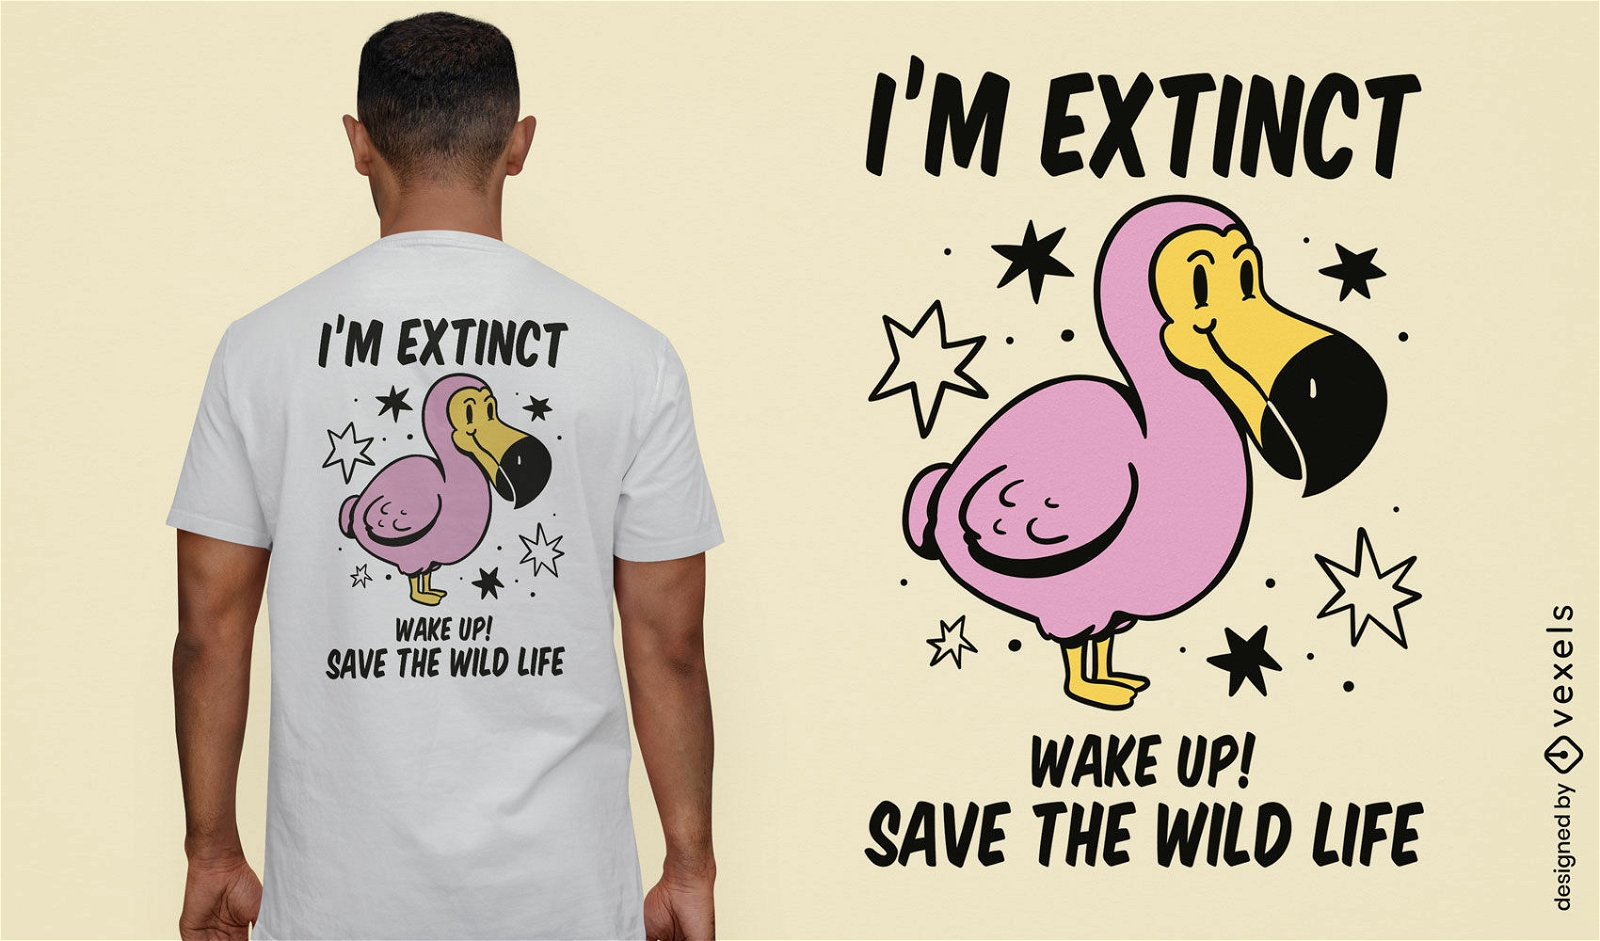 Extint bird awareness quote t-shirt design